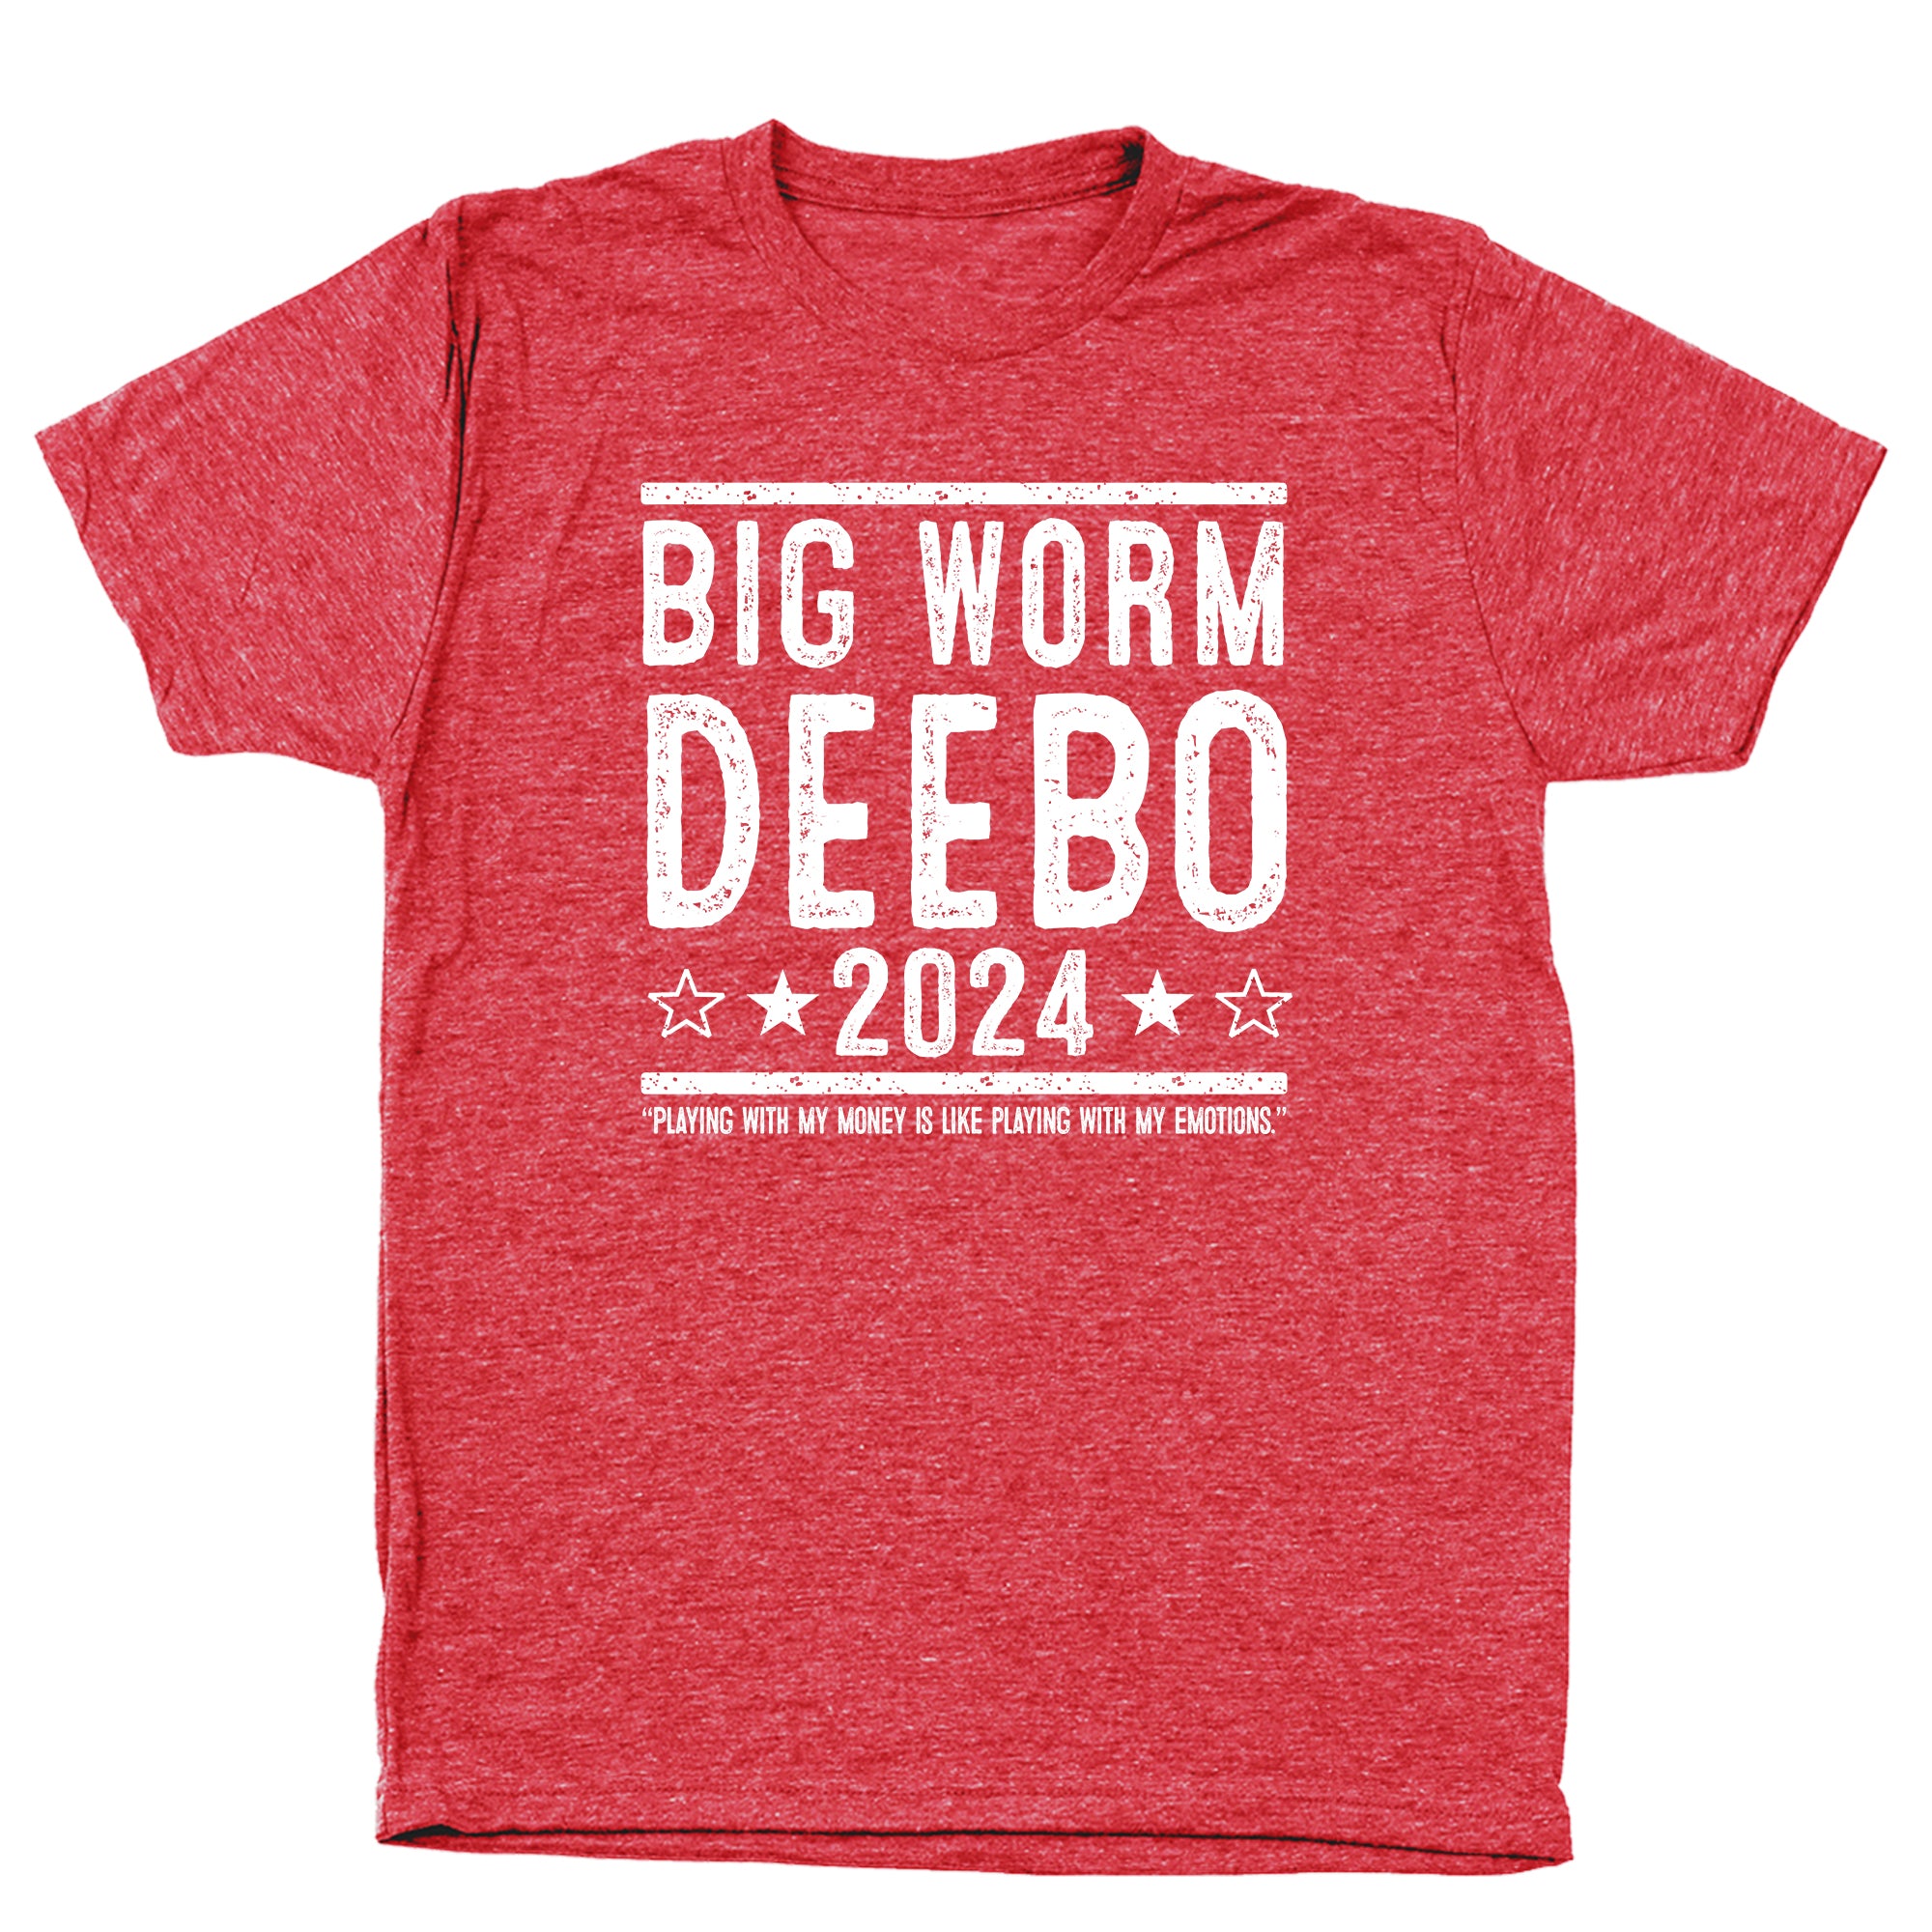 Big Worm and Deebo 2024 Election Tshirt - Donkey Tees